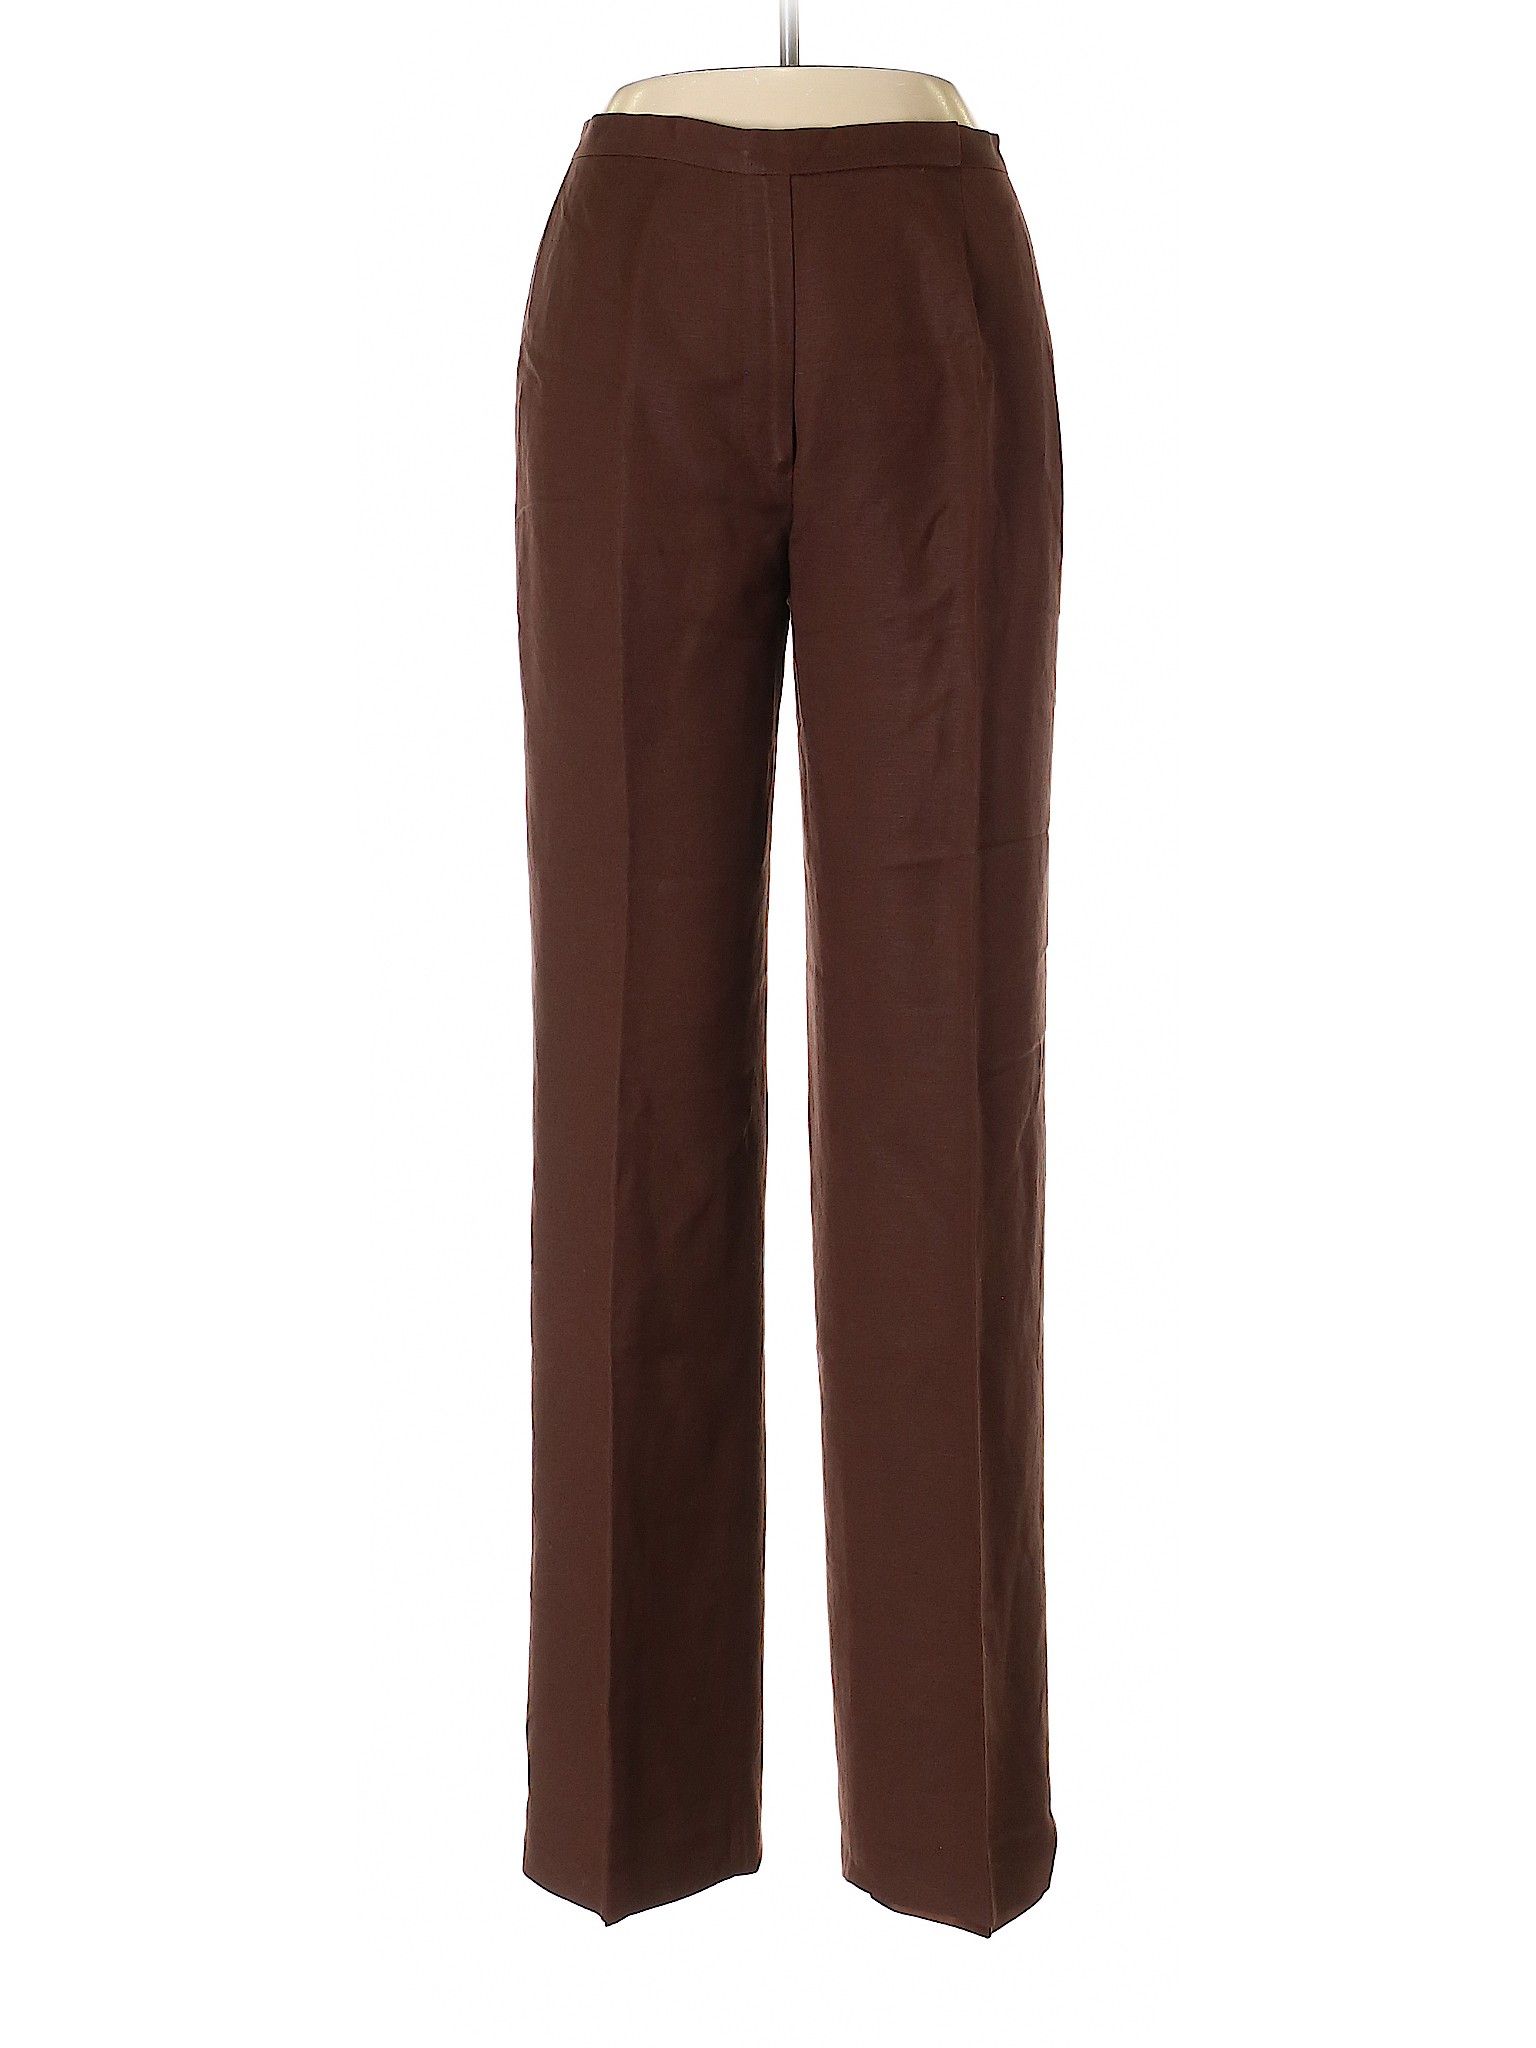 Le Suit Linen Pants Size 6: Brown Women's Bottoms - 55469582 | thredUP